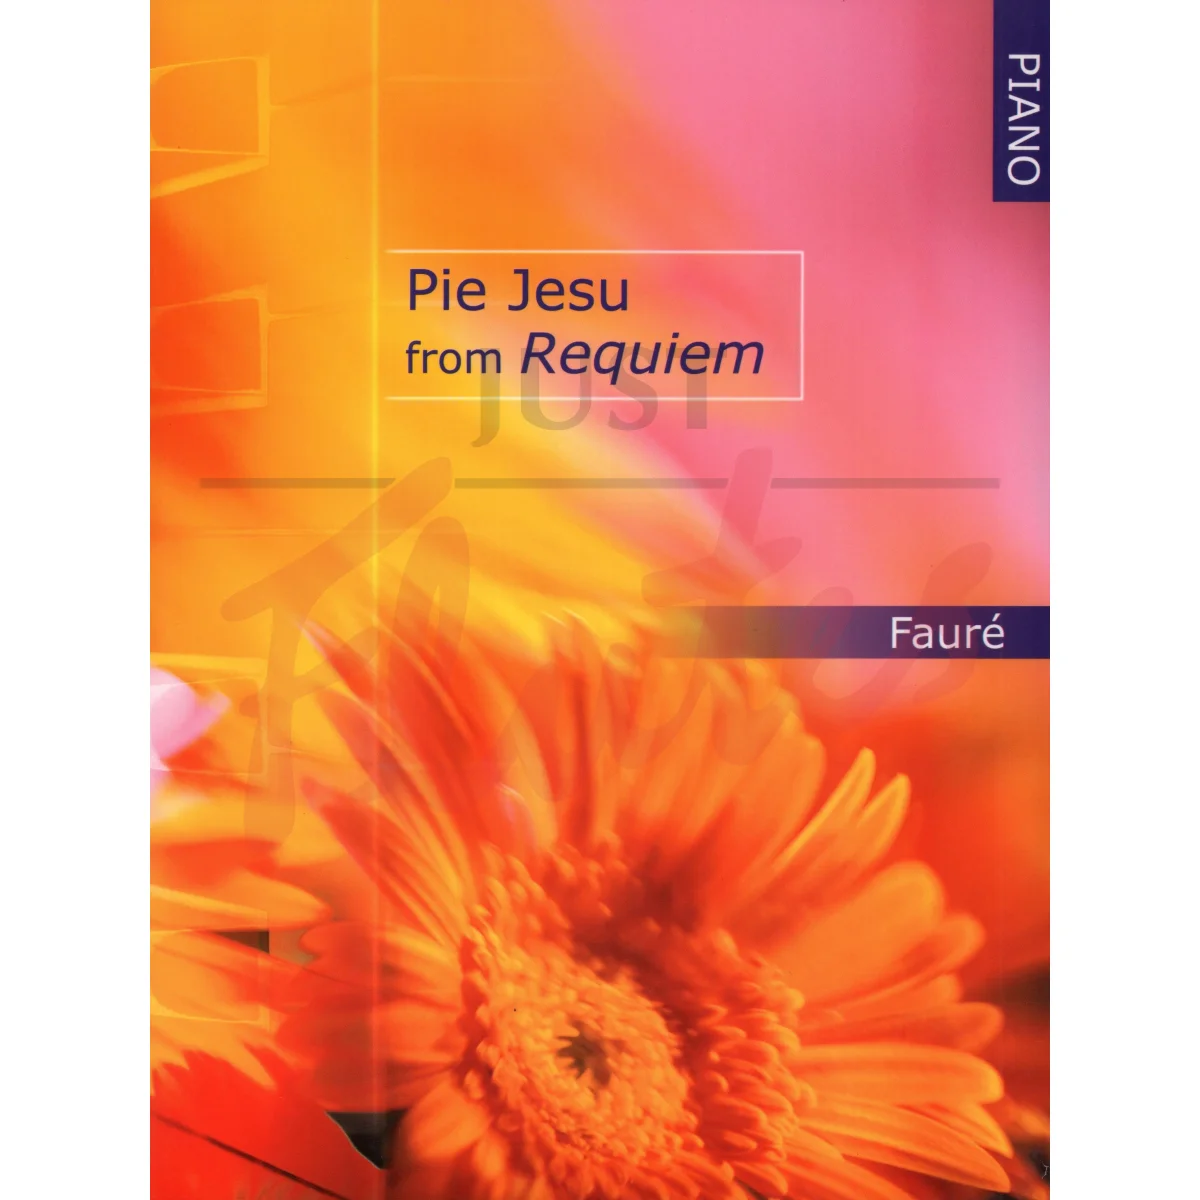 Pie Jesu from Requiem for Piano